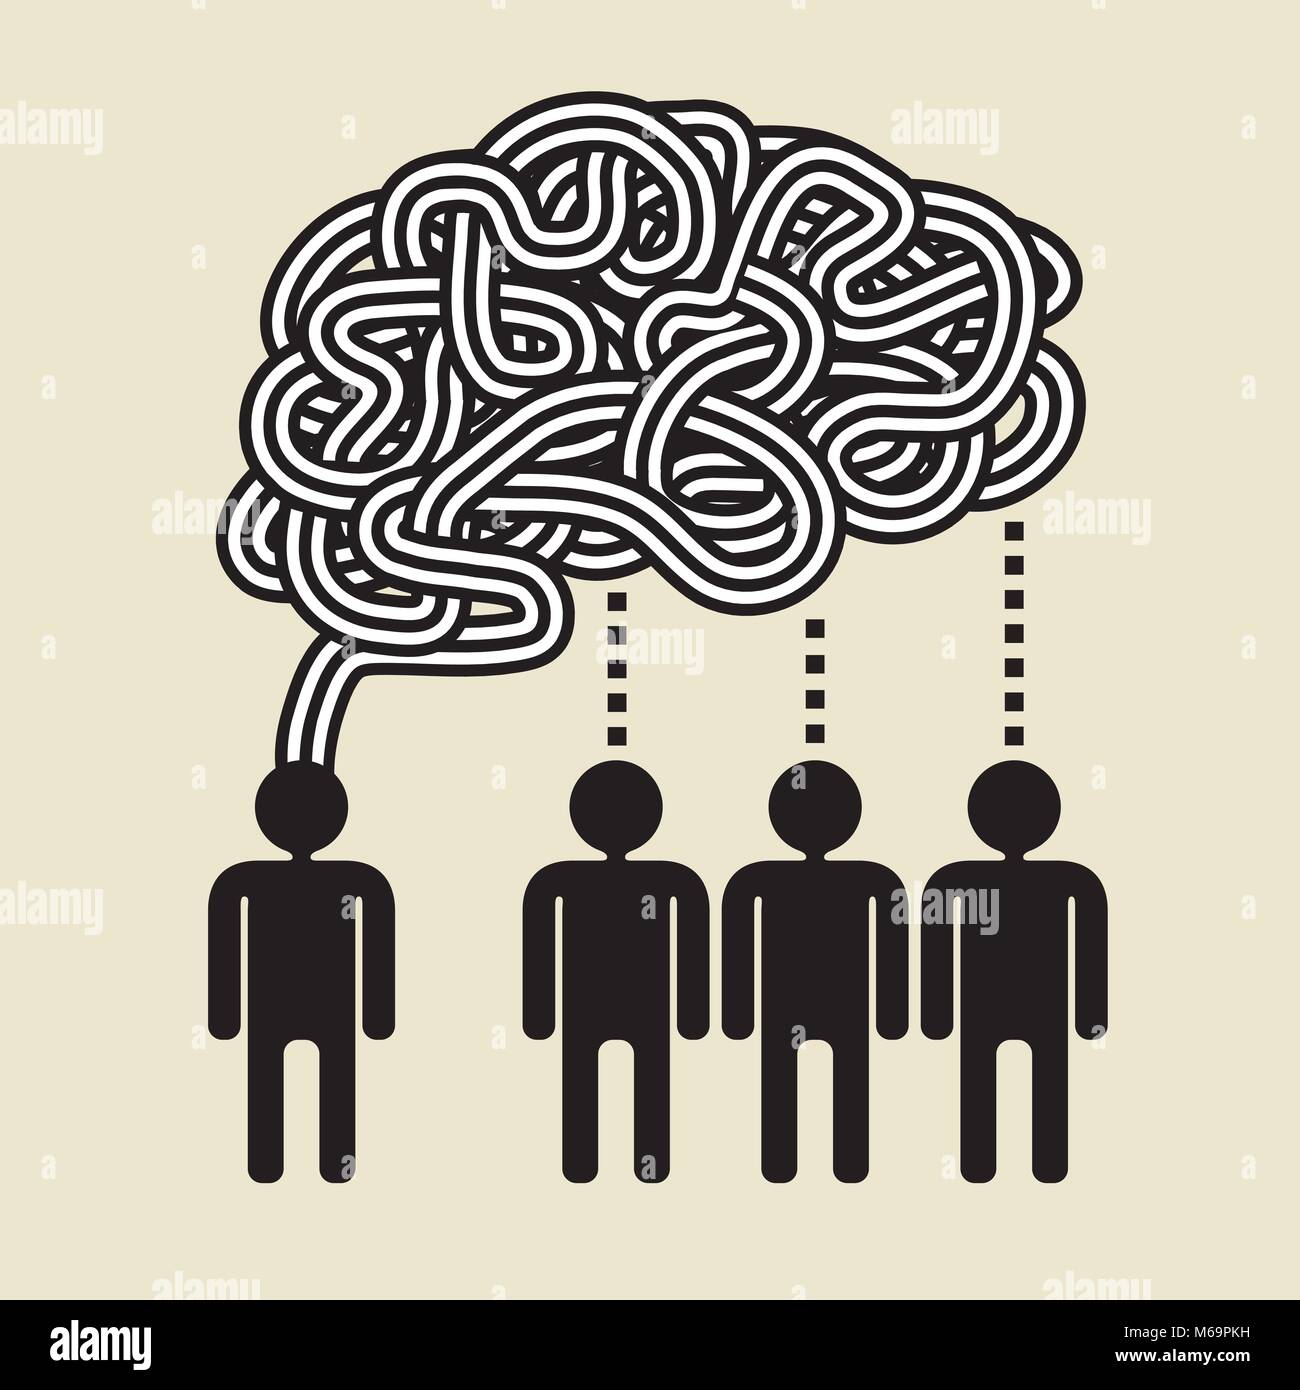 Big Brain imagination: Teilen Sie Ihre großen Ideen Stock Vektor